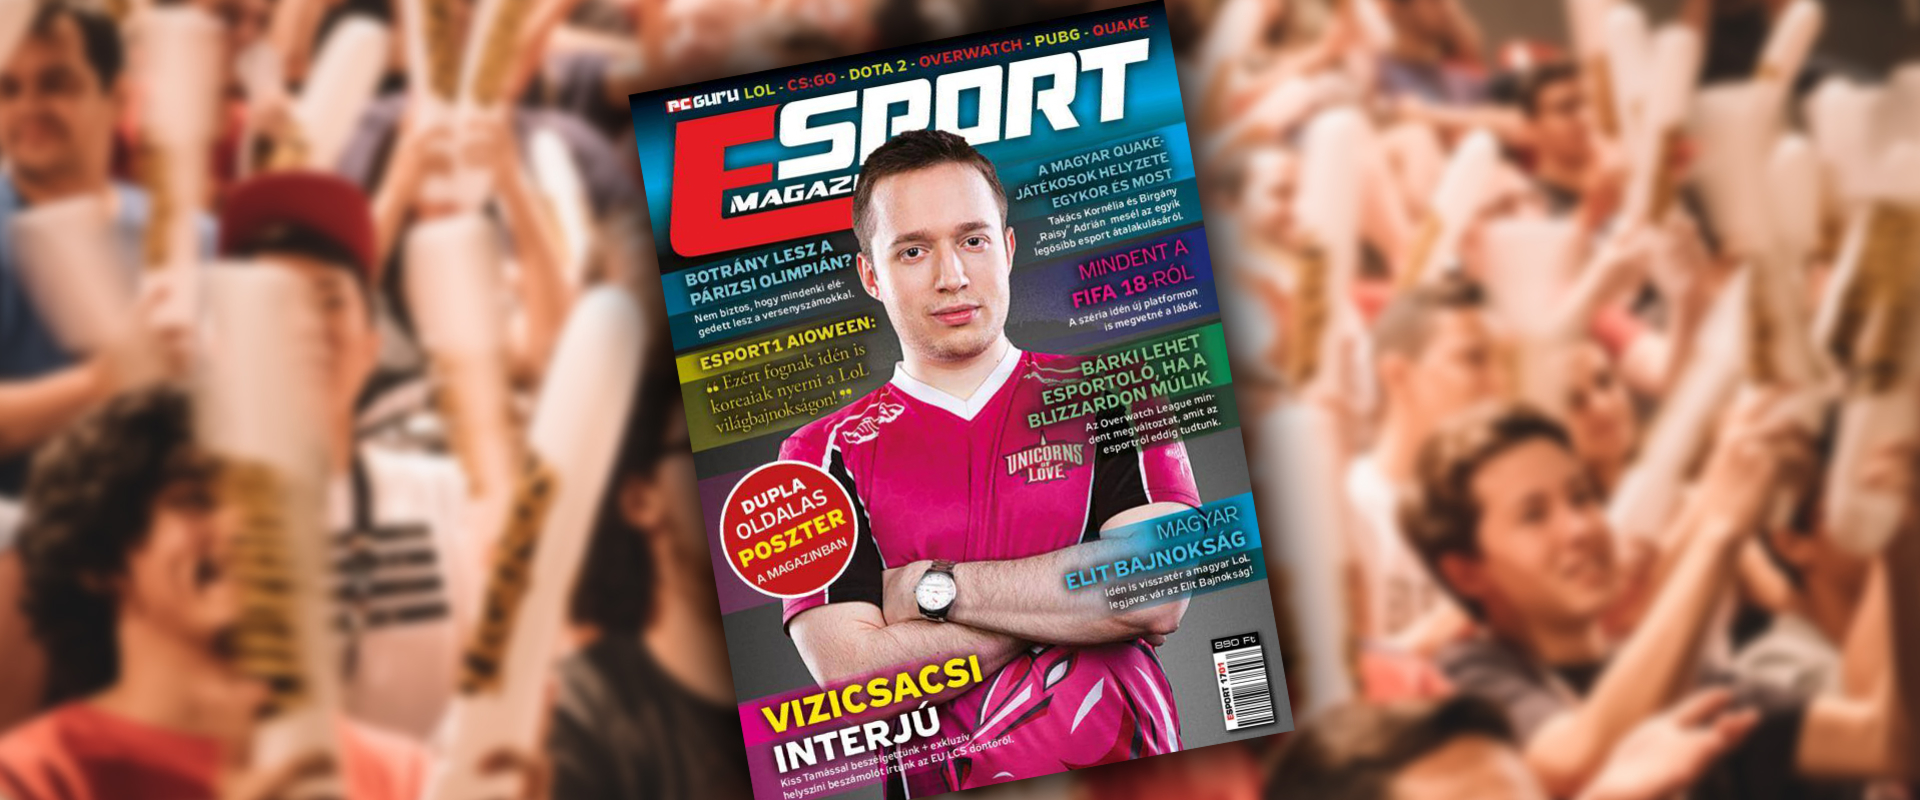 Történelmi pillanat: megjelent az első magyar nyelvű e-sport magazin!